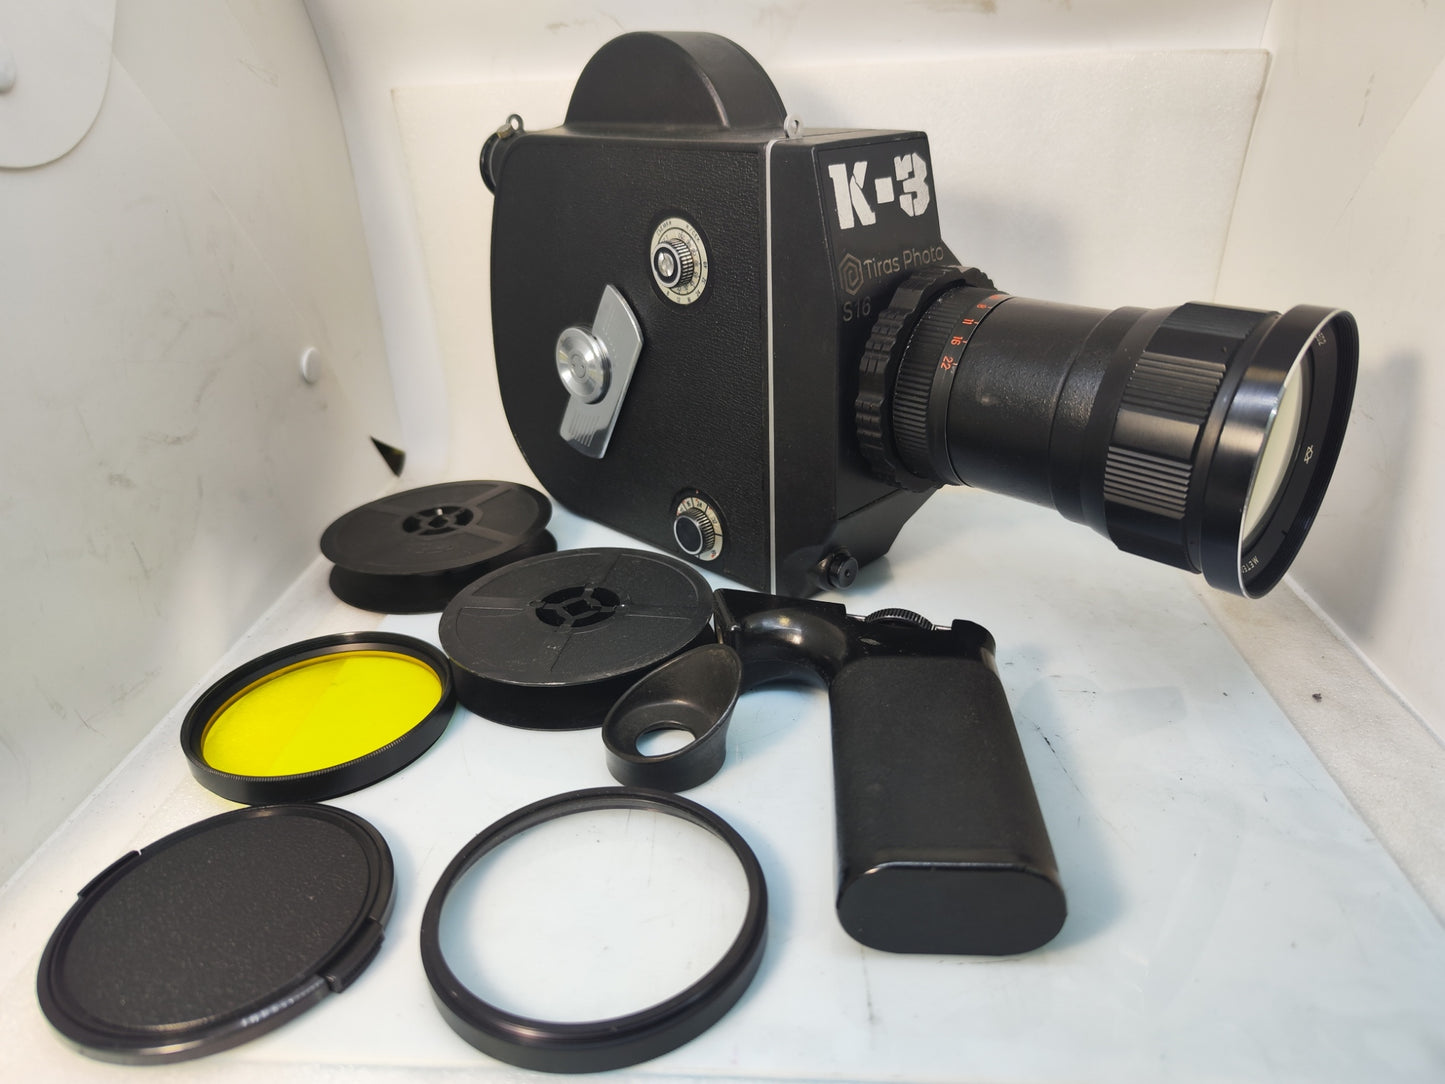 Krasnogorsk-3 Super16 Ultra16 ARRI PL - Canon EF - M42 mount 16mm Movie Camera Zoom lensK-3 K3